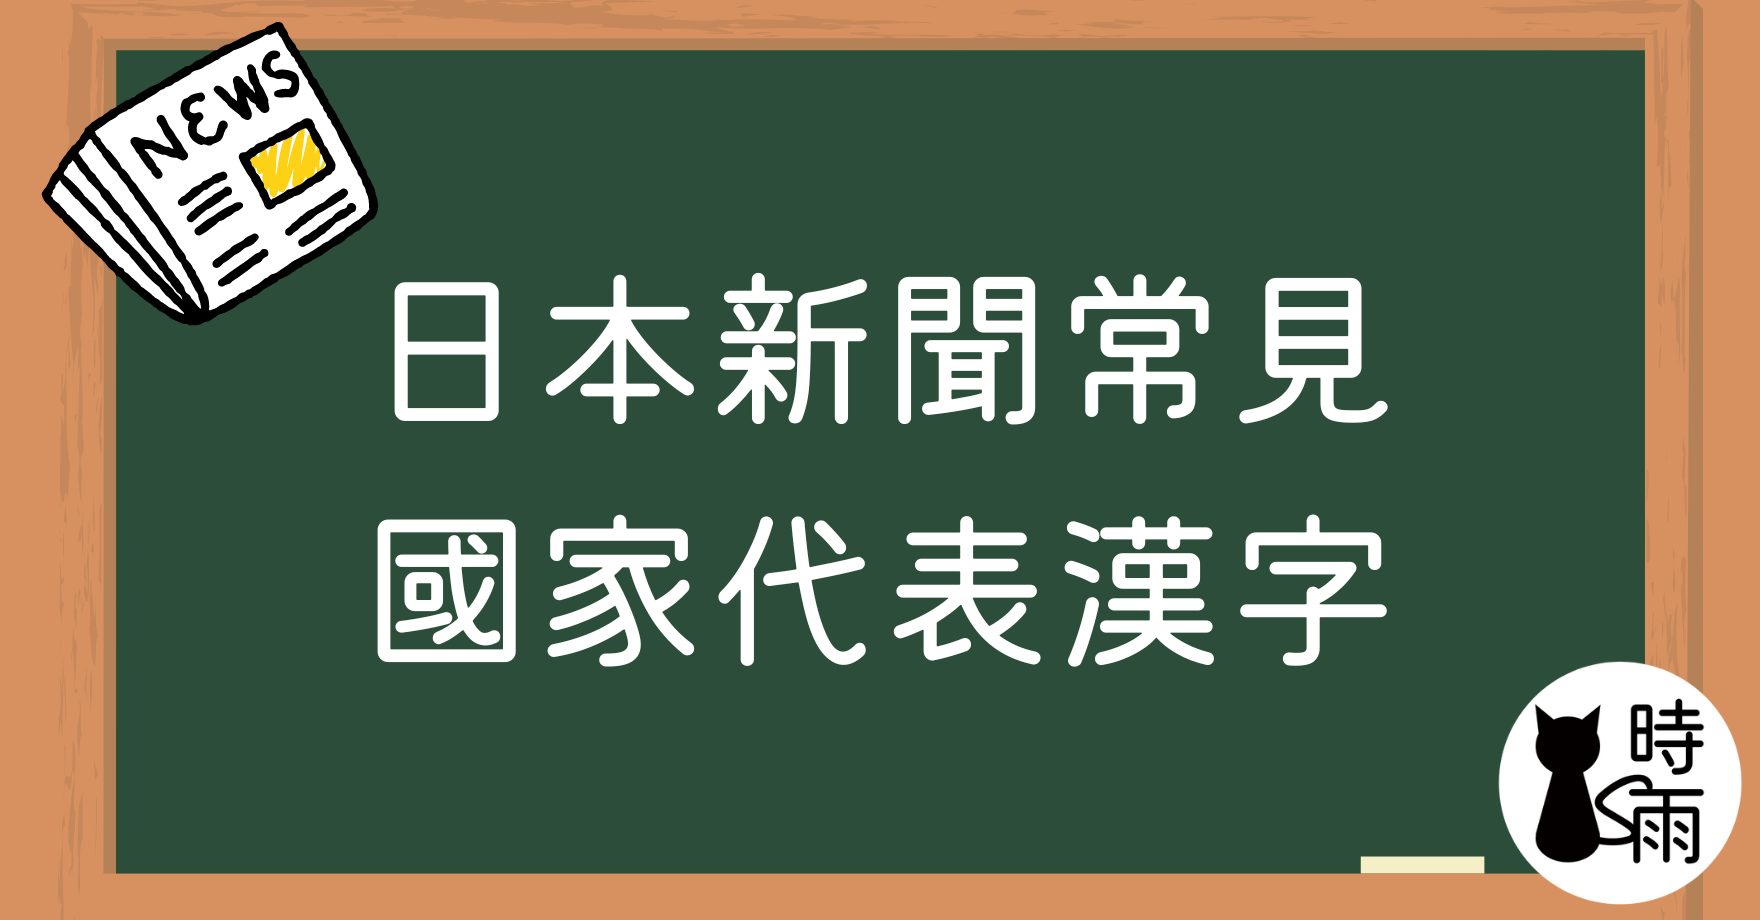 日本新聞常見國家代表漢字